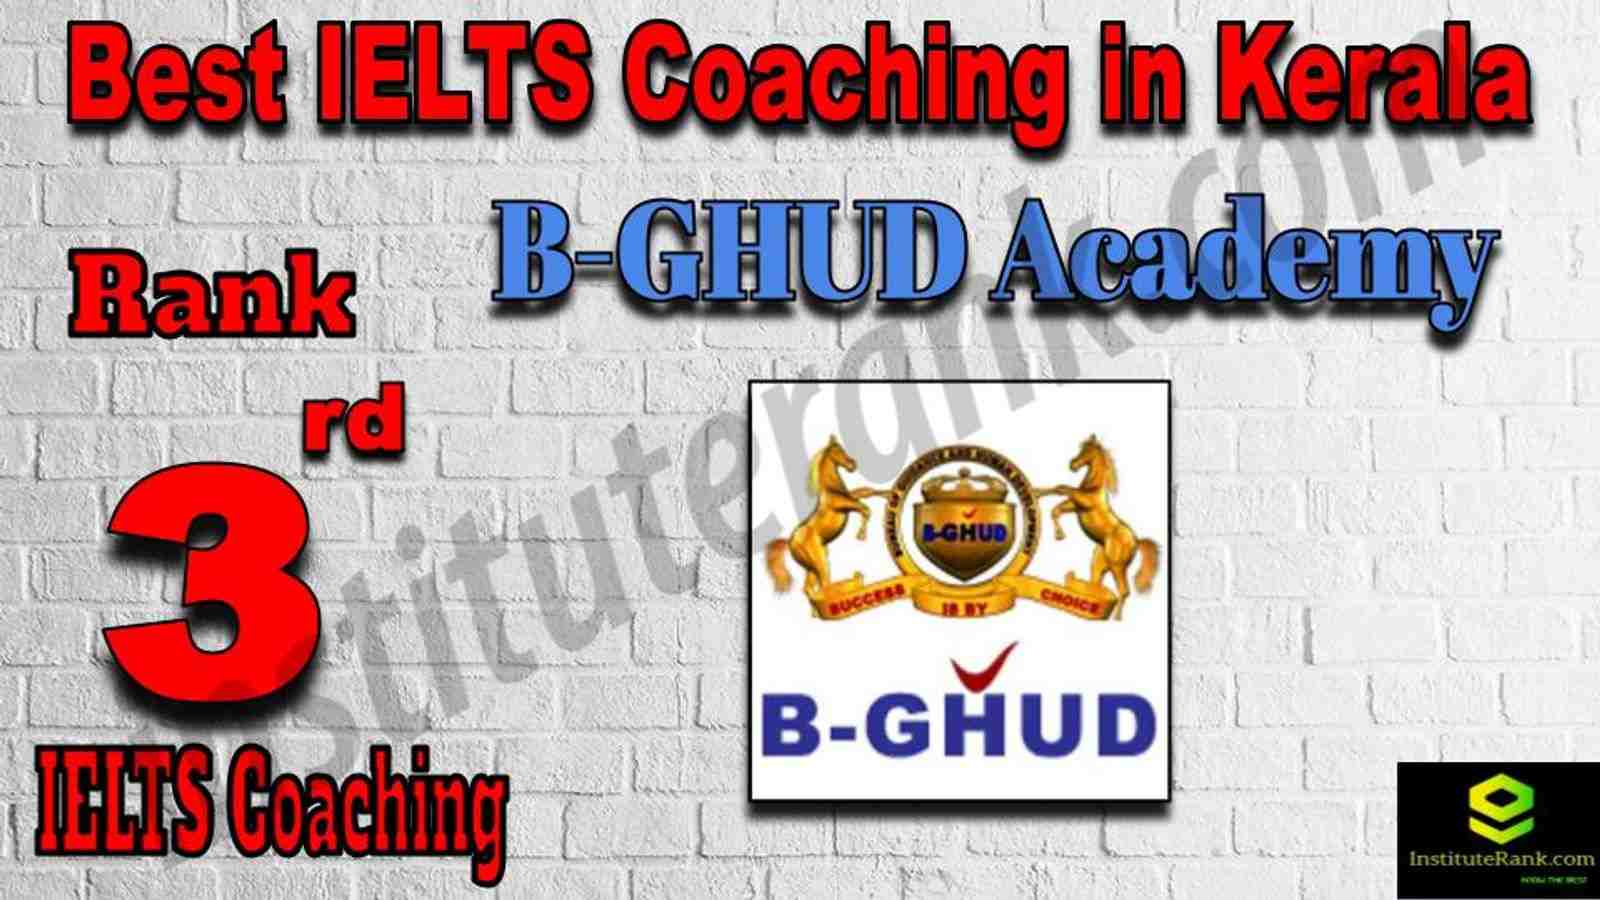 3rd Best IELTS Coaching in Kerala